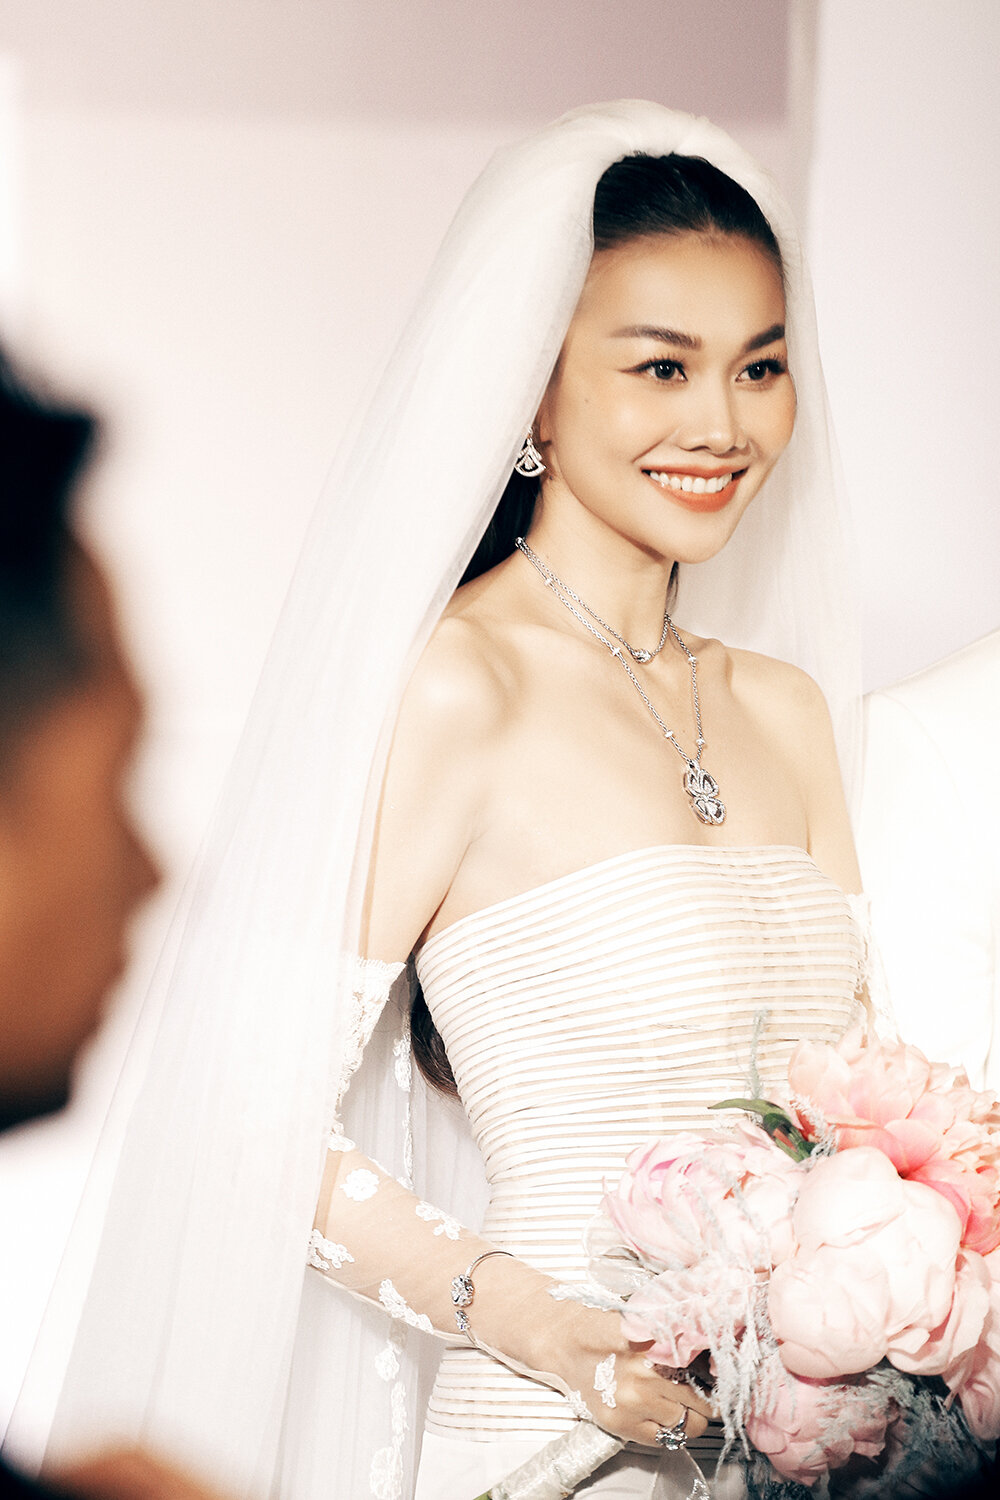  Thanh Hằng đeo trang sức 10 tỷ đồng trong đám cưới với chồng nhạc trưởng - 13